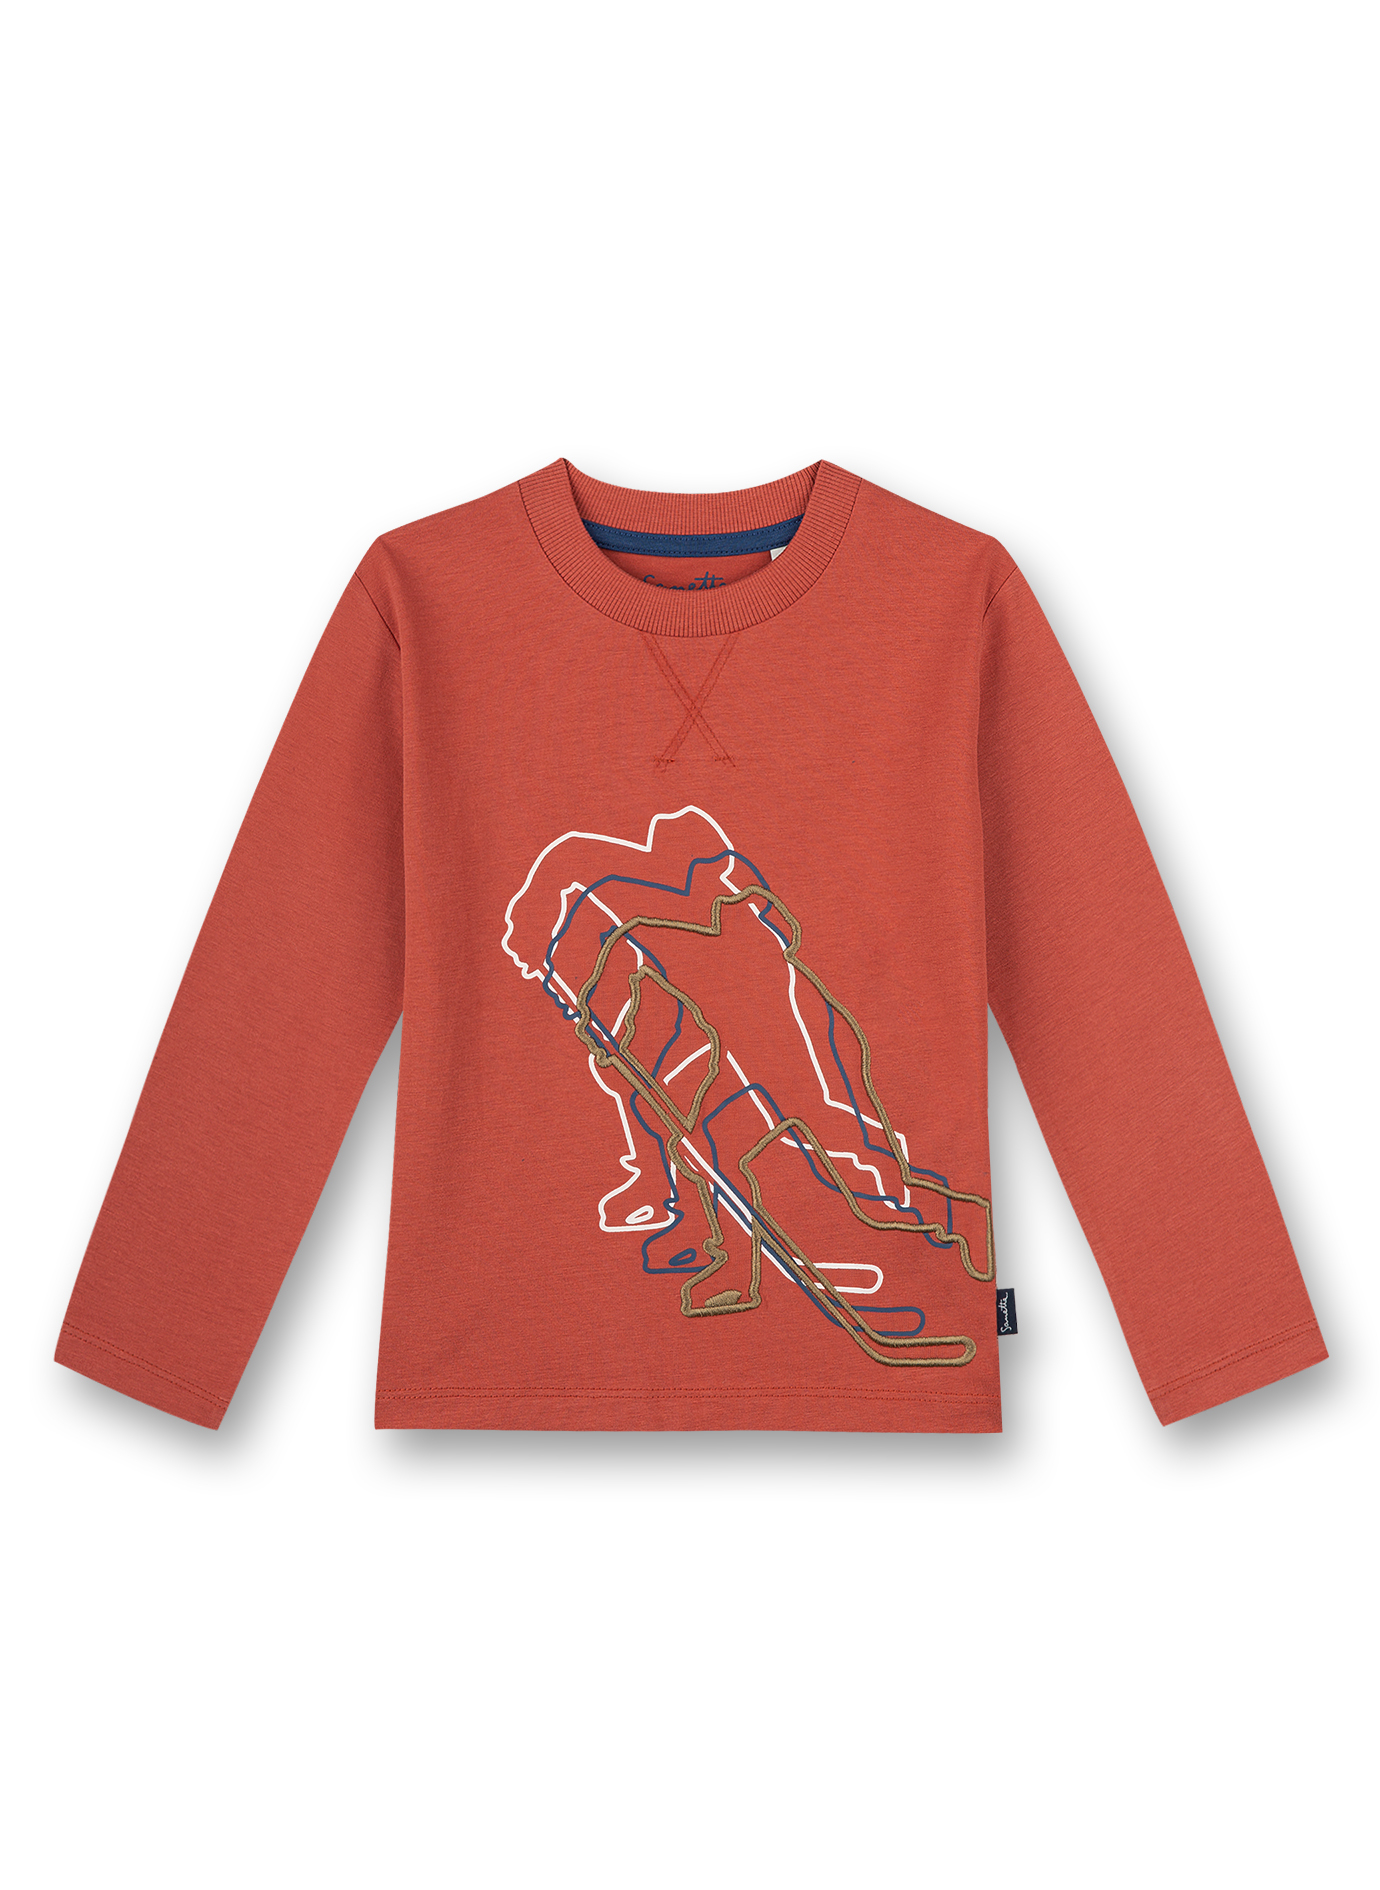 Jungen-Shirt langarm Rot Ice Hockey